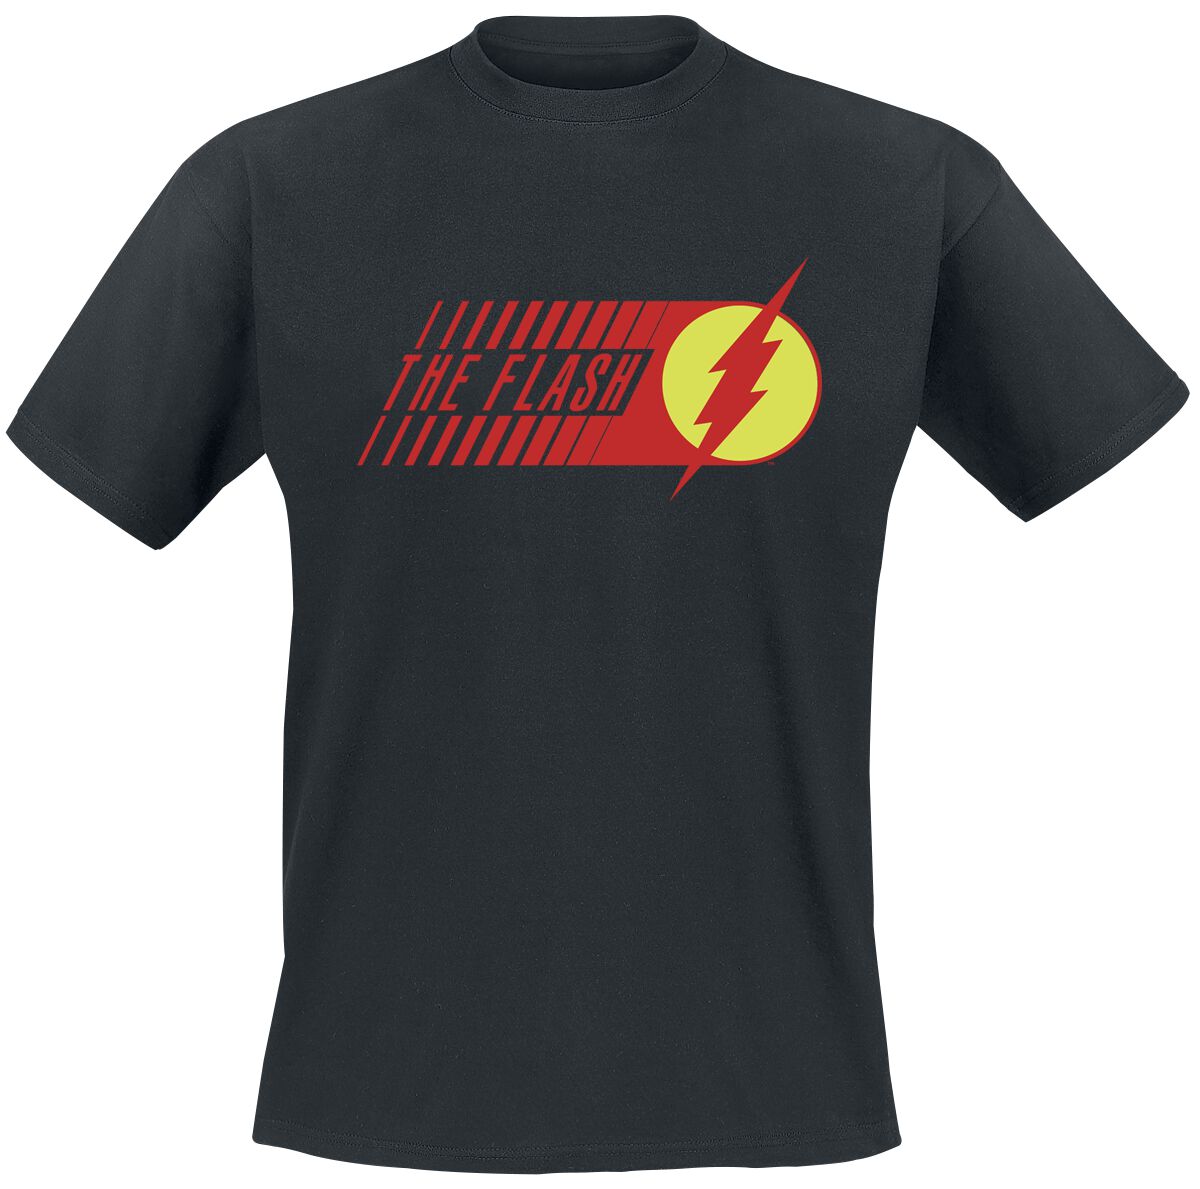 The Flash - DC Comics T-Shirt - Flash - Starlabs - S bis XXL - für Männer - Größe M - schwarz  - EMP exklusives Merchandise!